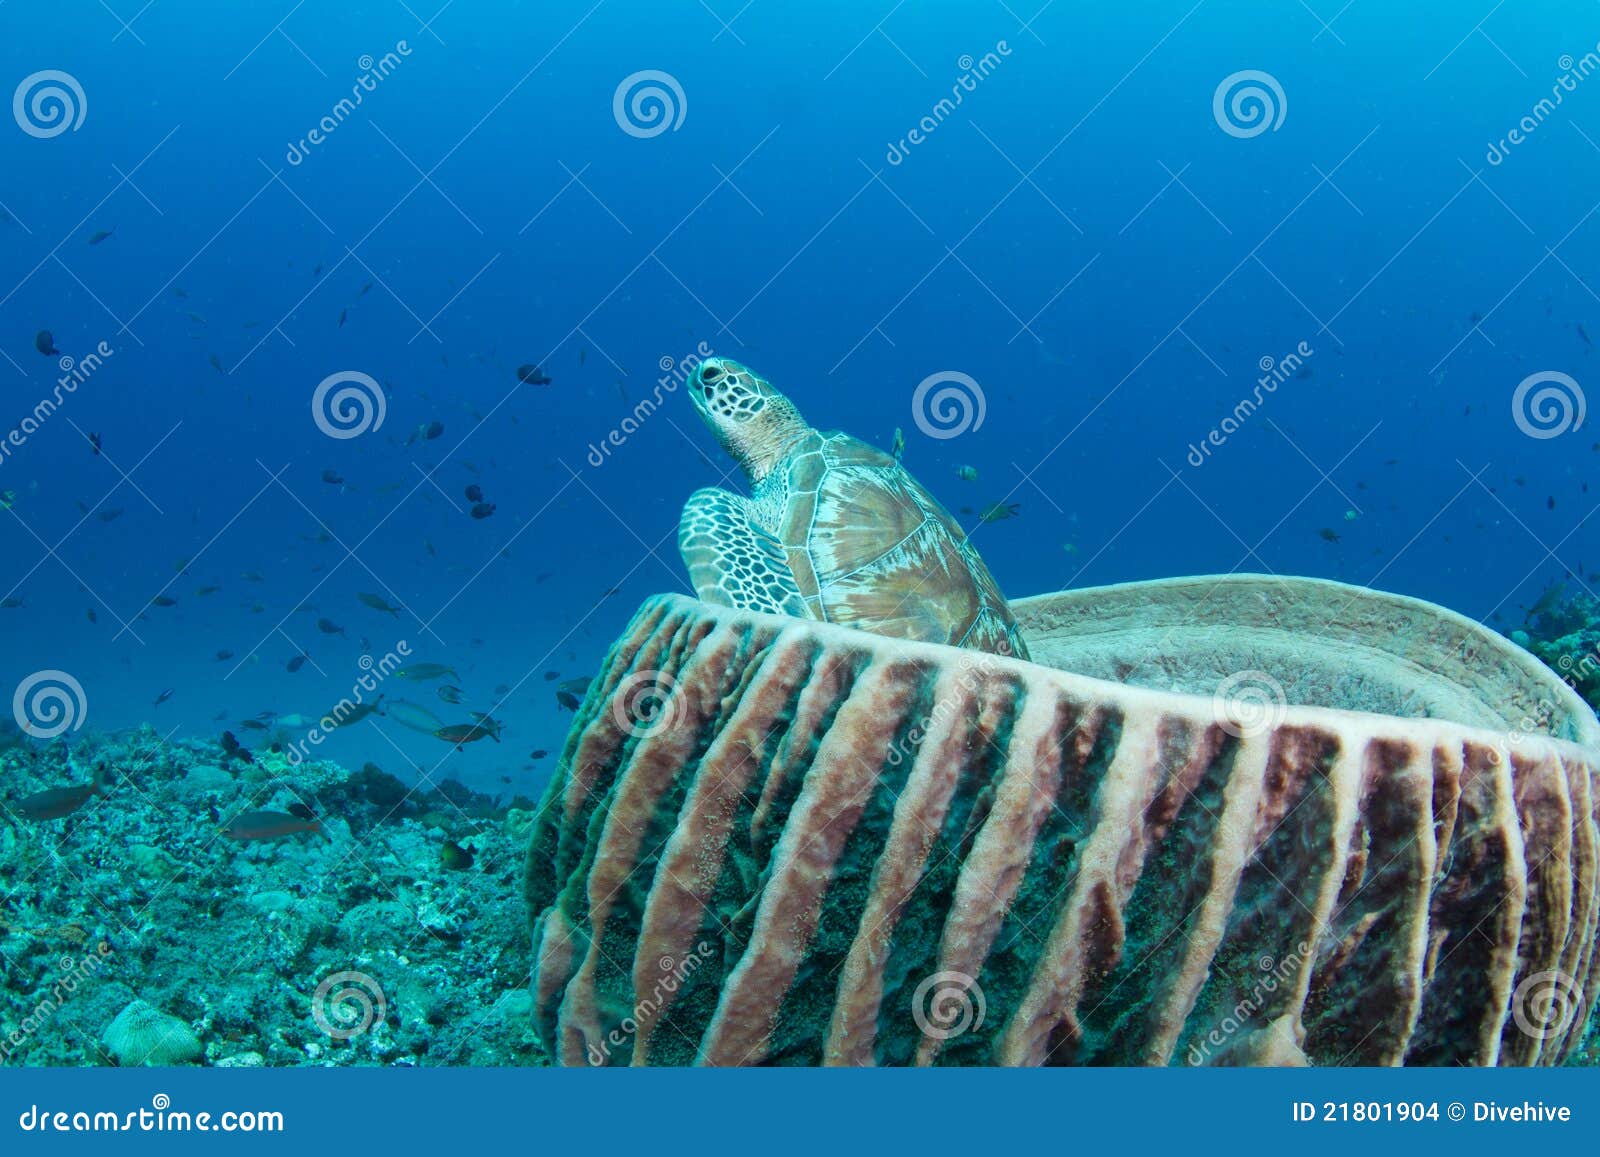 Tortuga verde que se sienta en una esponja del barril. Una tortuga verde que pega su cabeza fuera de una esponja enorme del barril